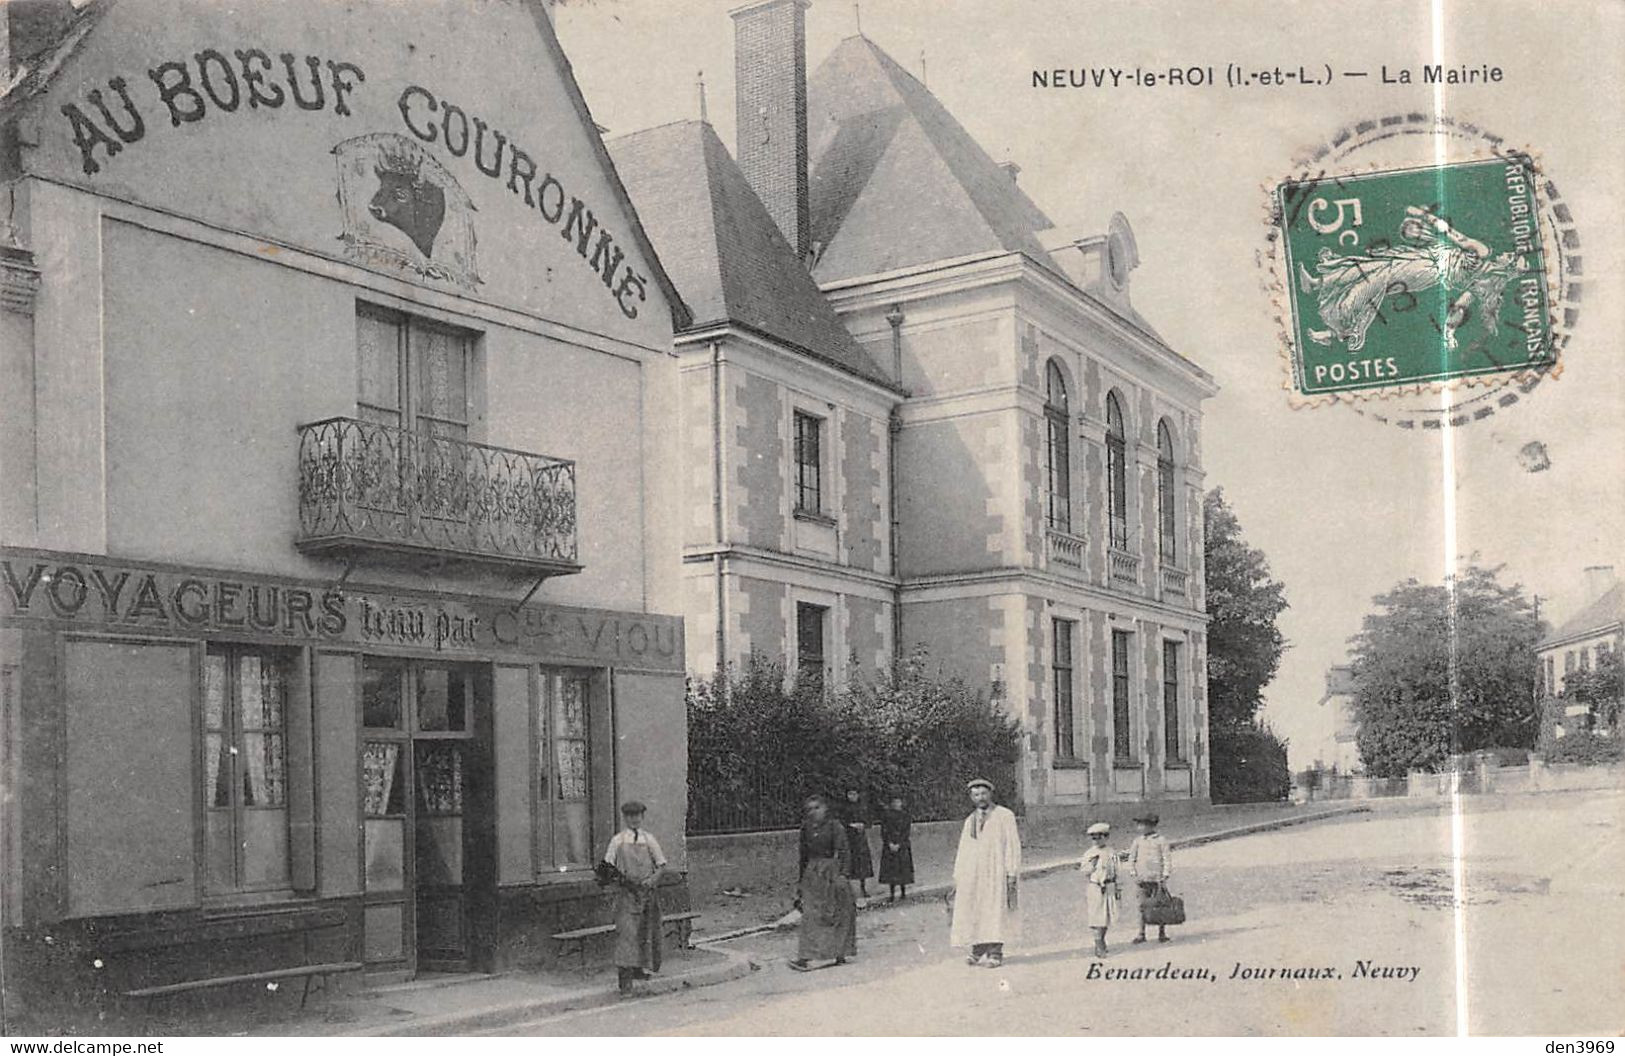 NEUVY-le-ROI (Indre-et-Loire) - La Mairie - Au Boeuf Couronné, Café Où Hôtel Des Voyageurs Tenu Par C. Viou - Neuvy-le-Roi